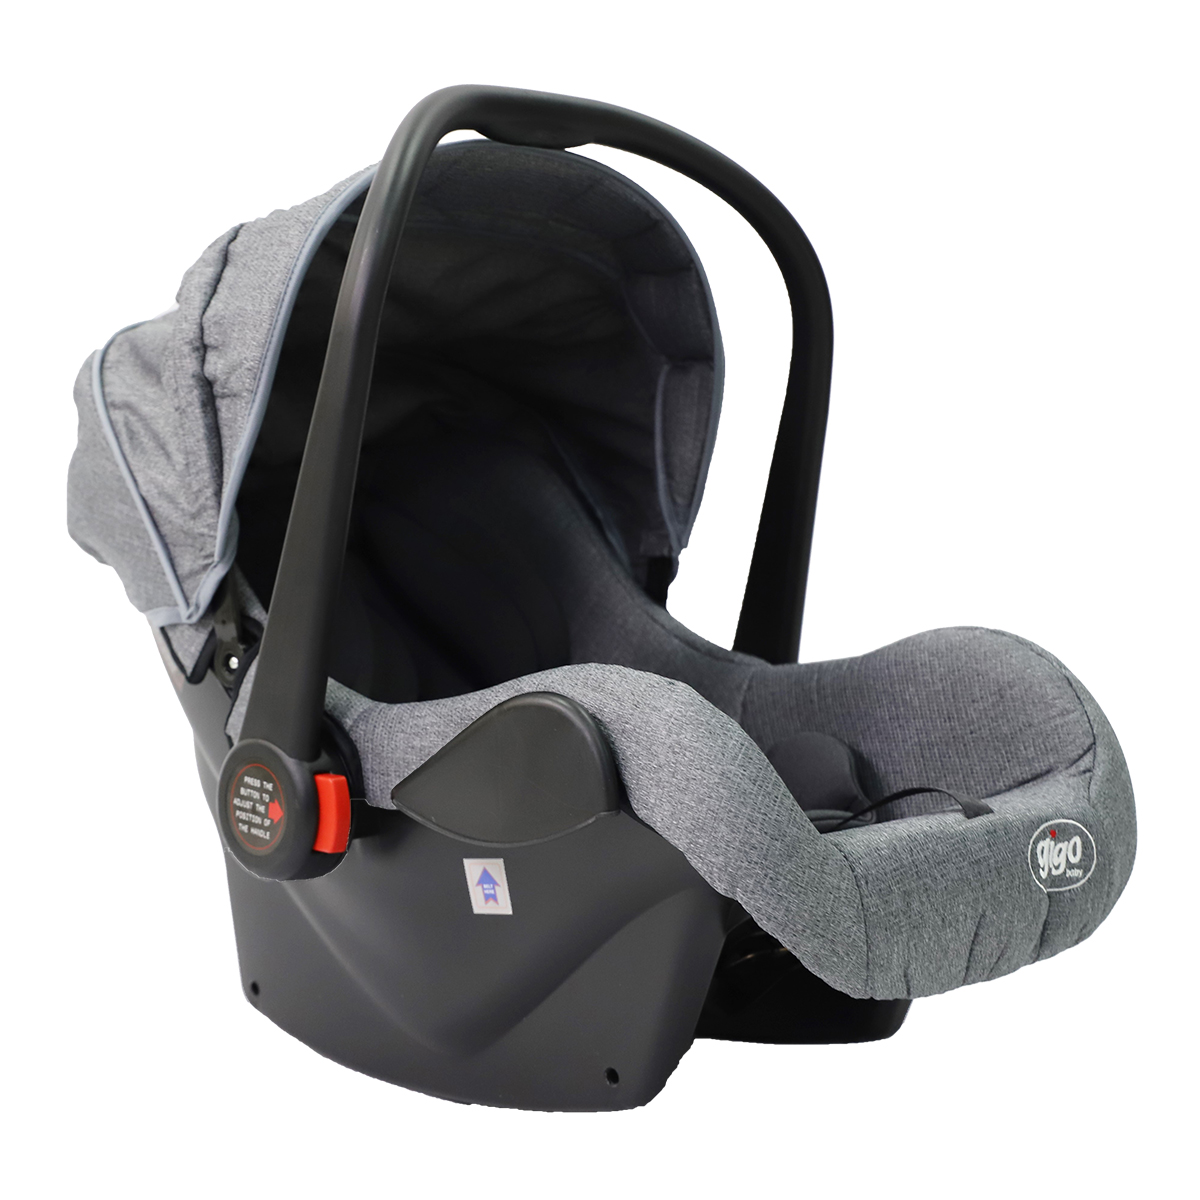 GIGO Portable Baby Carrying Pouch Car Seat - Grey